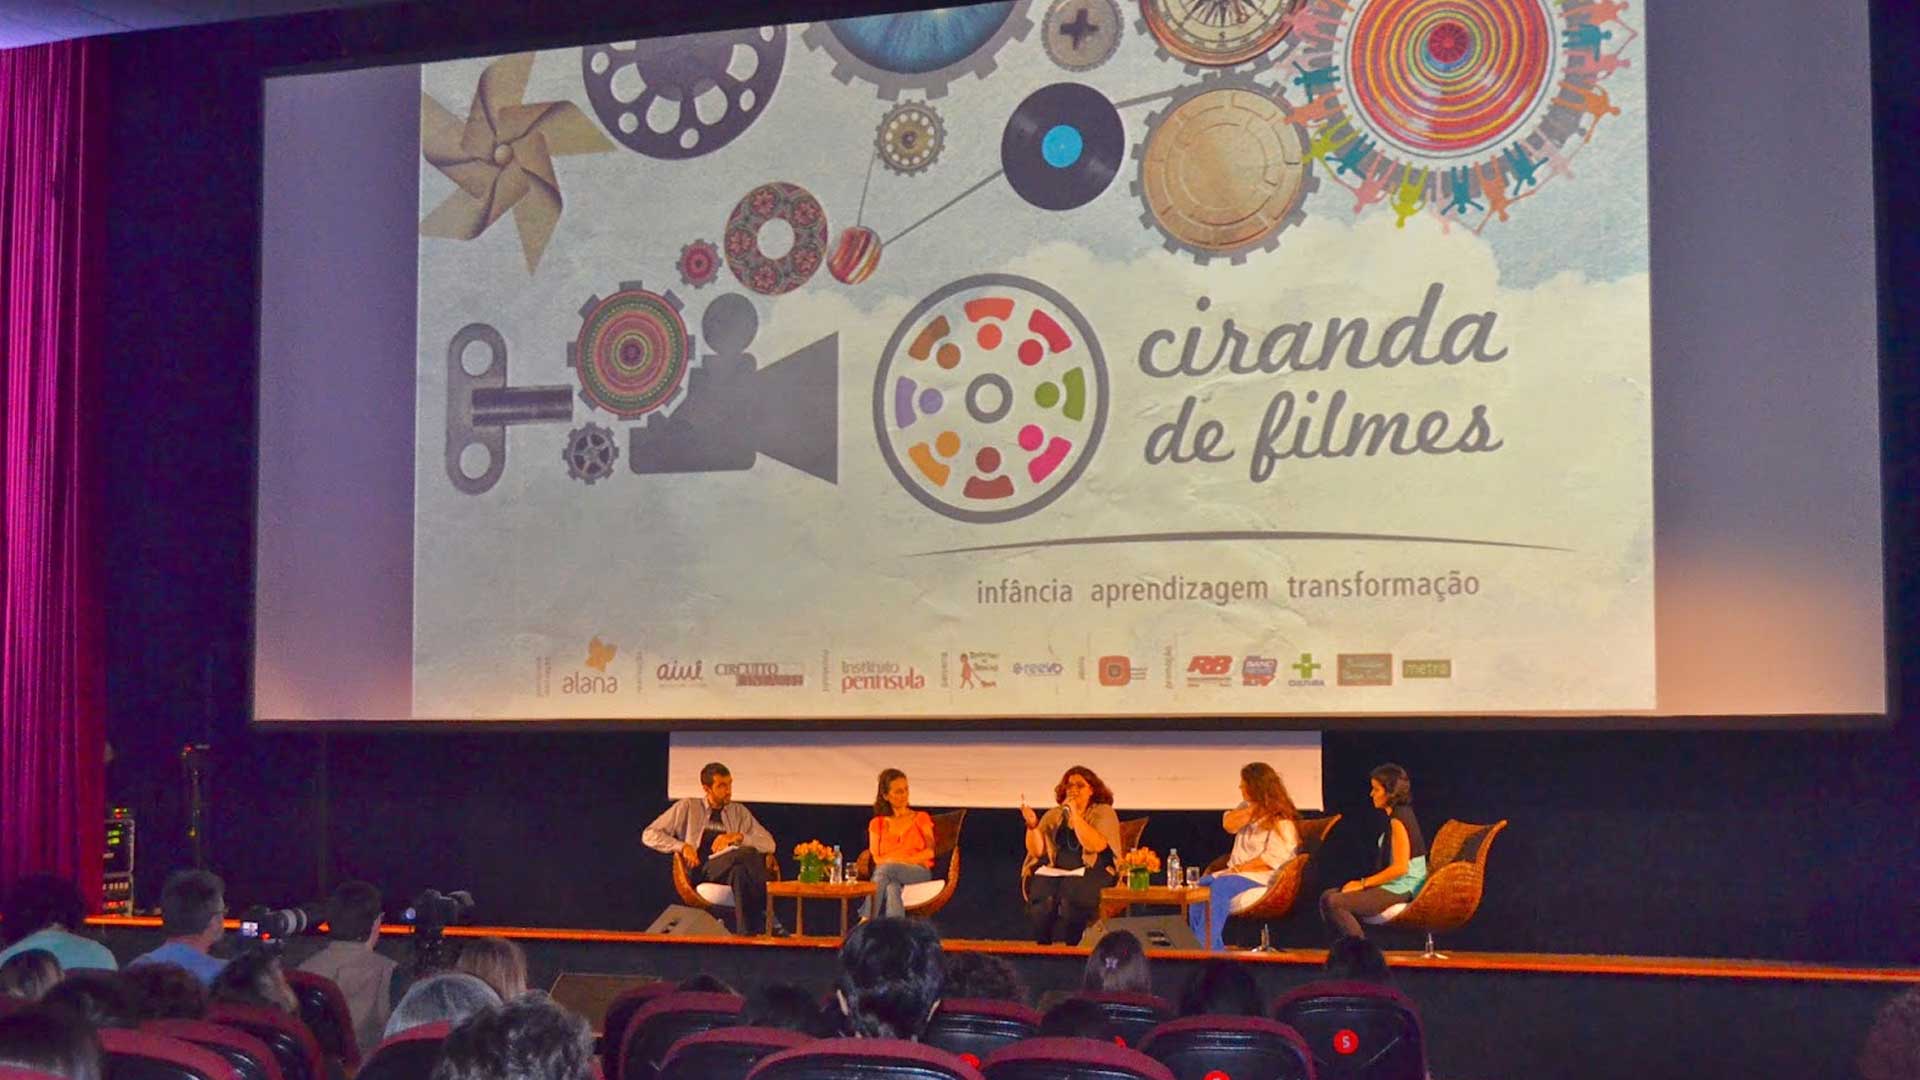 Foto de um palco de uma sala de cinema, cinco pessoas discursam. Acima, um telão com o logo do projeto "Ciranda de Filmes".